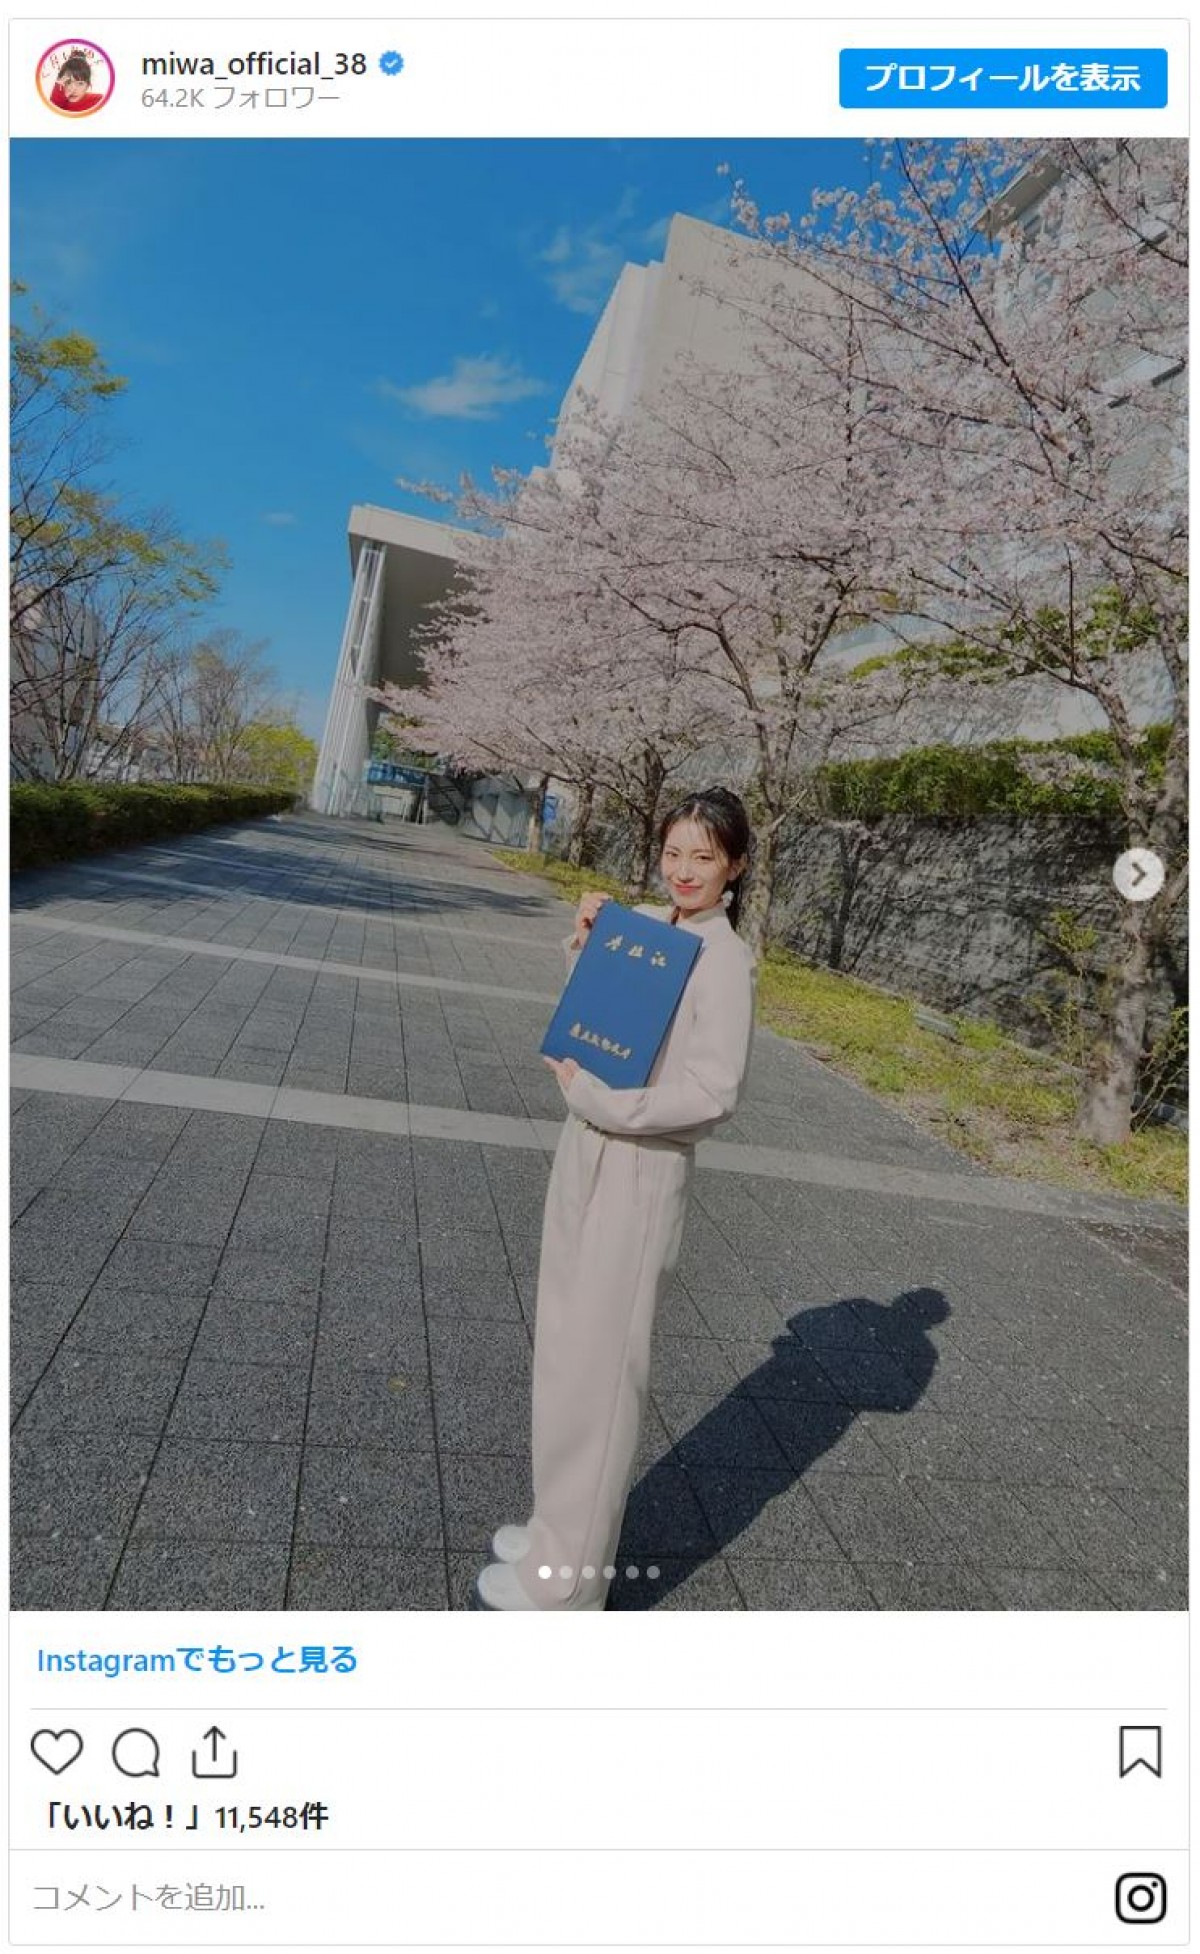 32歳のmiwa、慶應・大学院修士課程を修了　半年後から「博士課程へ行けるようがんばります」